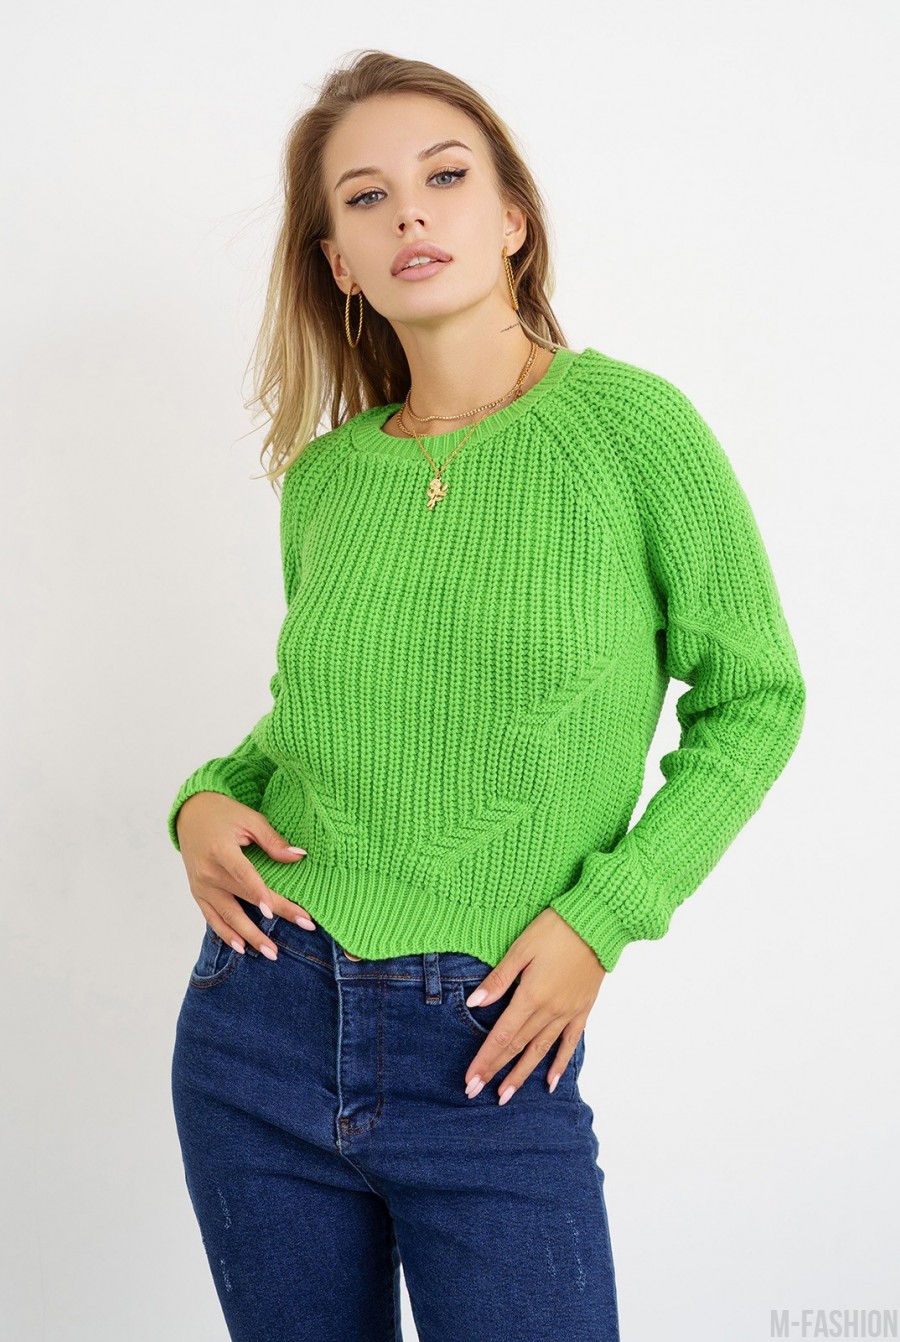 Салатовый вязаный свитер с фигурным низом - Фото 1